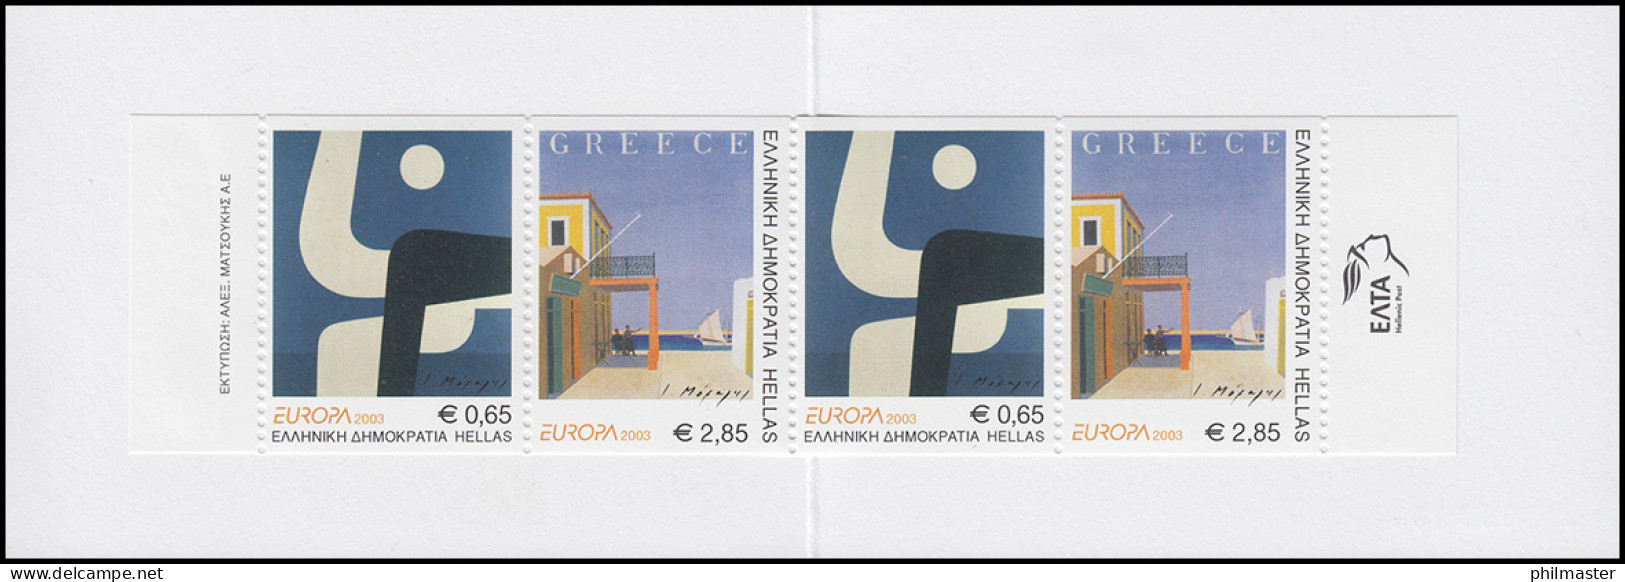 Griechenland Markenheftchen 25 Europa 2003, ** Postfrisch - Booklets